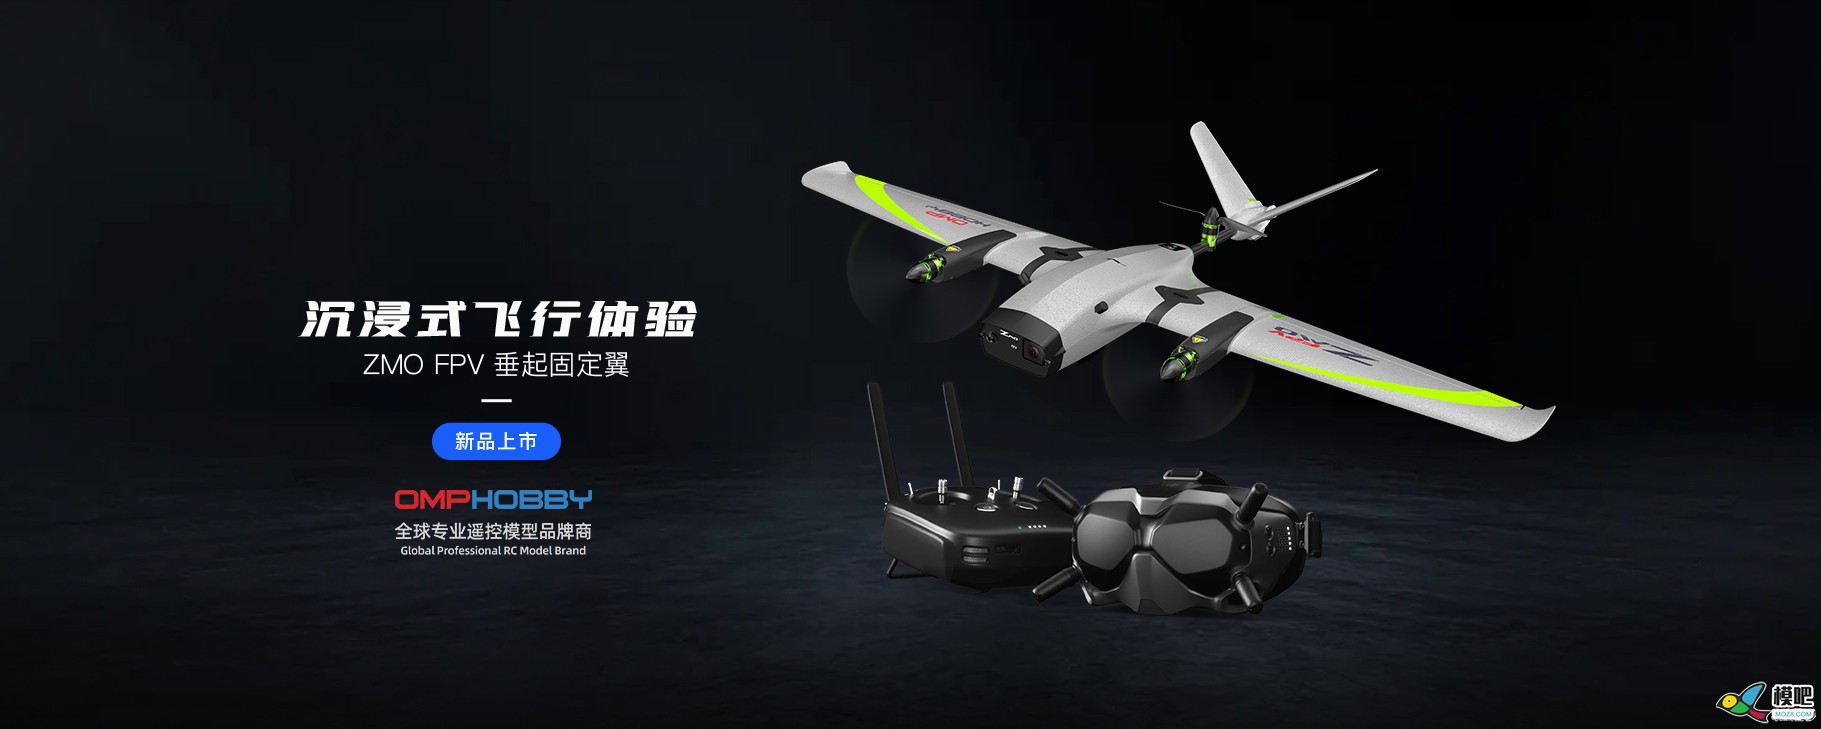 潮玩无人机-垂起固定翼FPV【ZMO】| 全新发售 无人机,航模,固定翼,飞手,飞行体验 作者:边锋领域 4214 